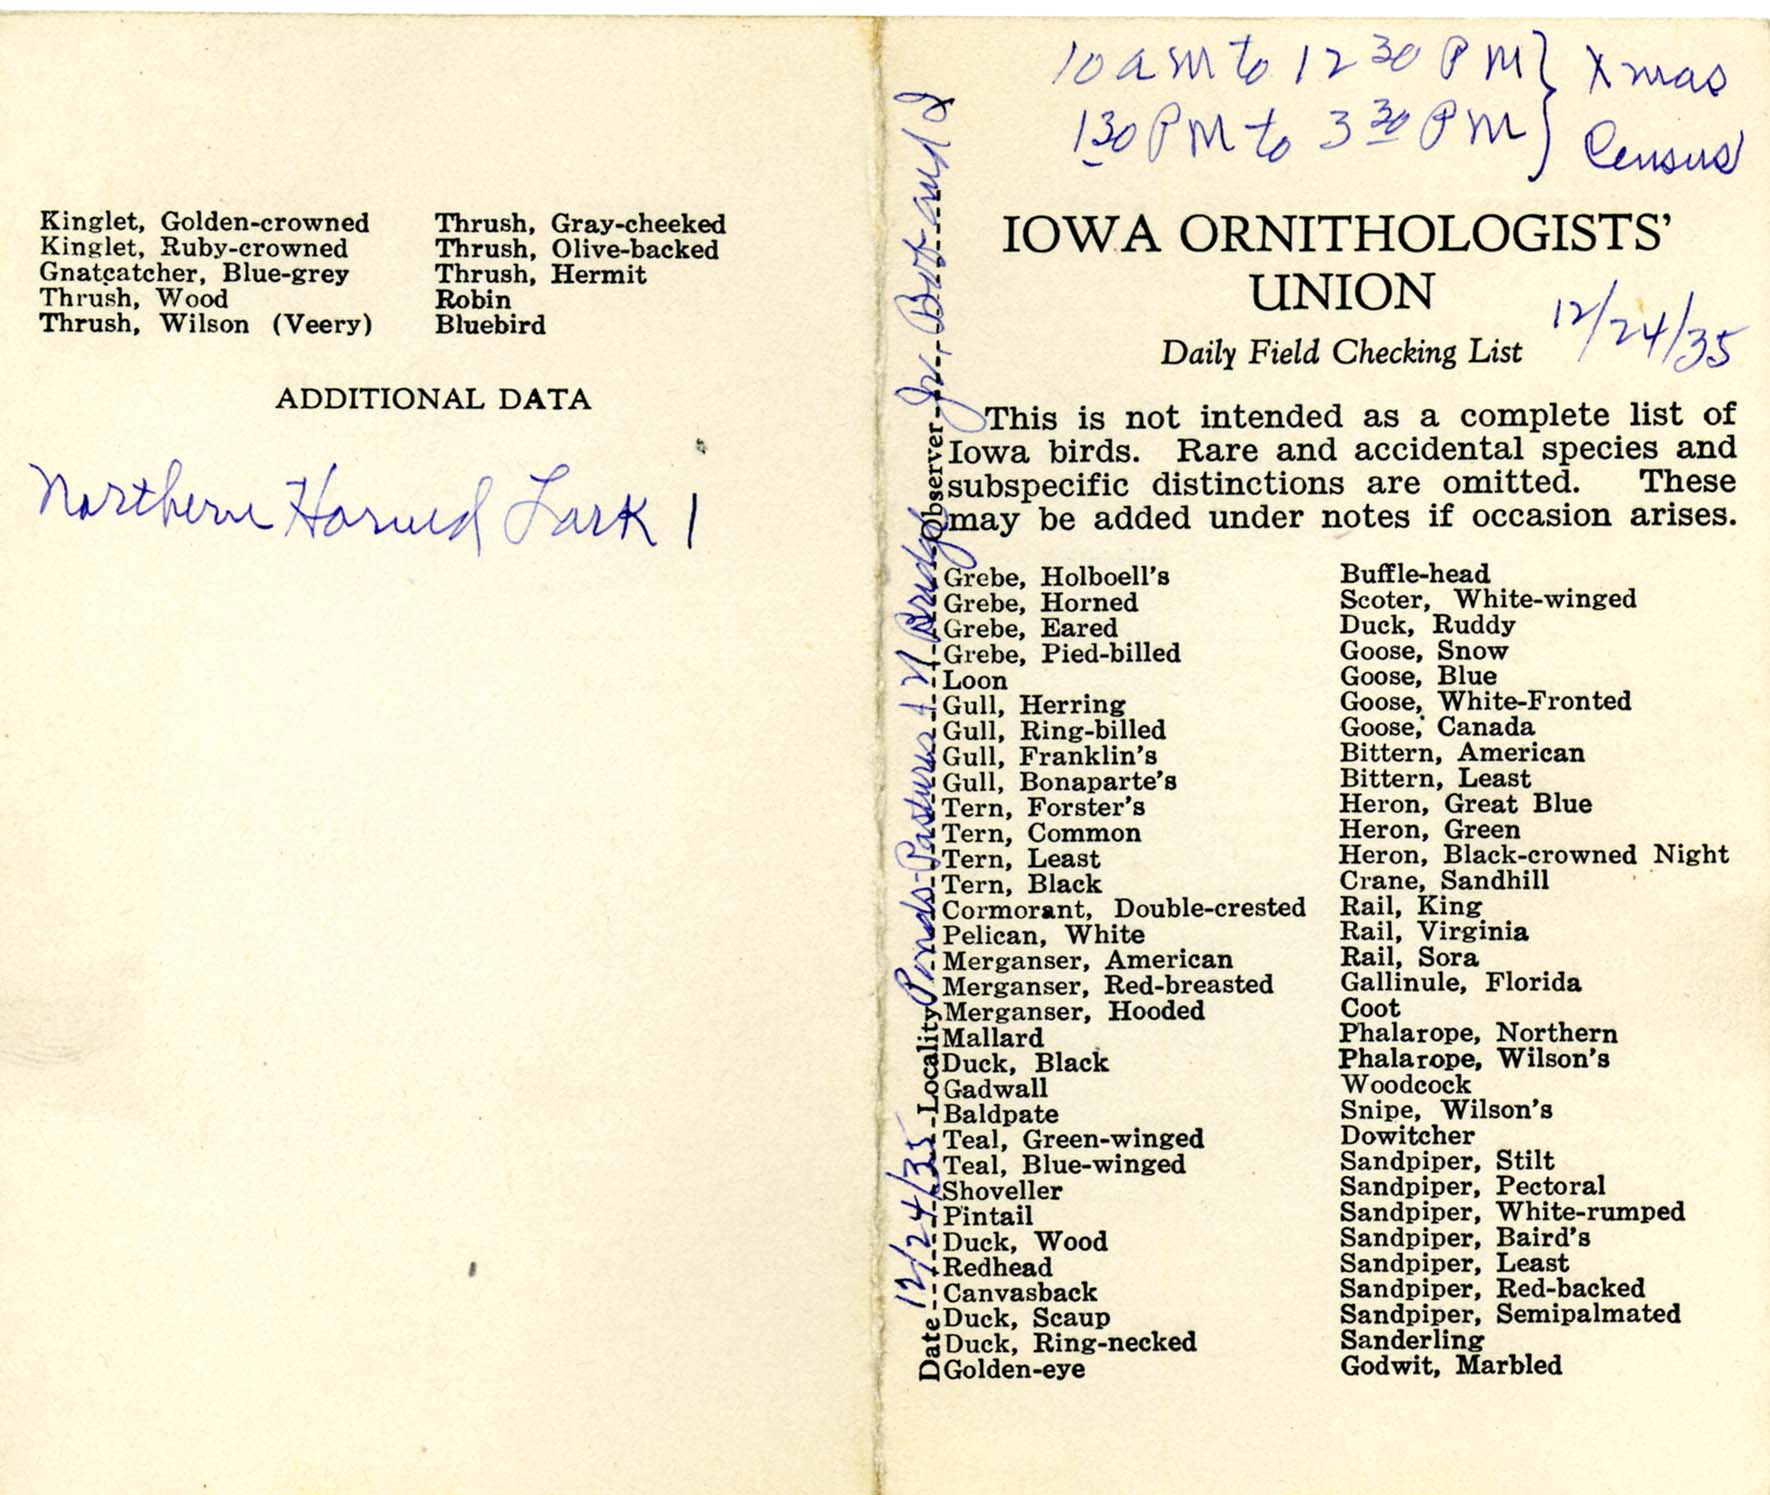 Daily field checking list, Walter Rosene, December 24, 1935